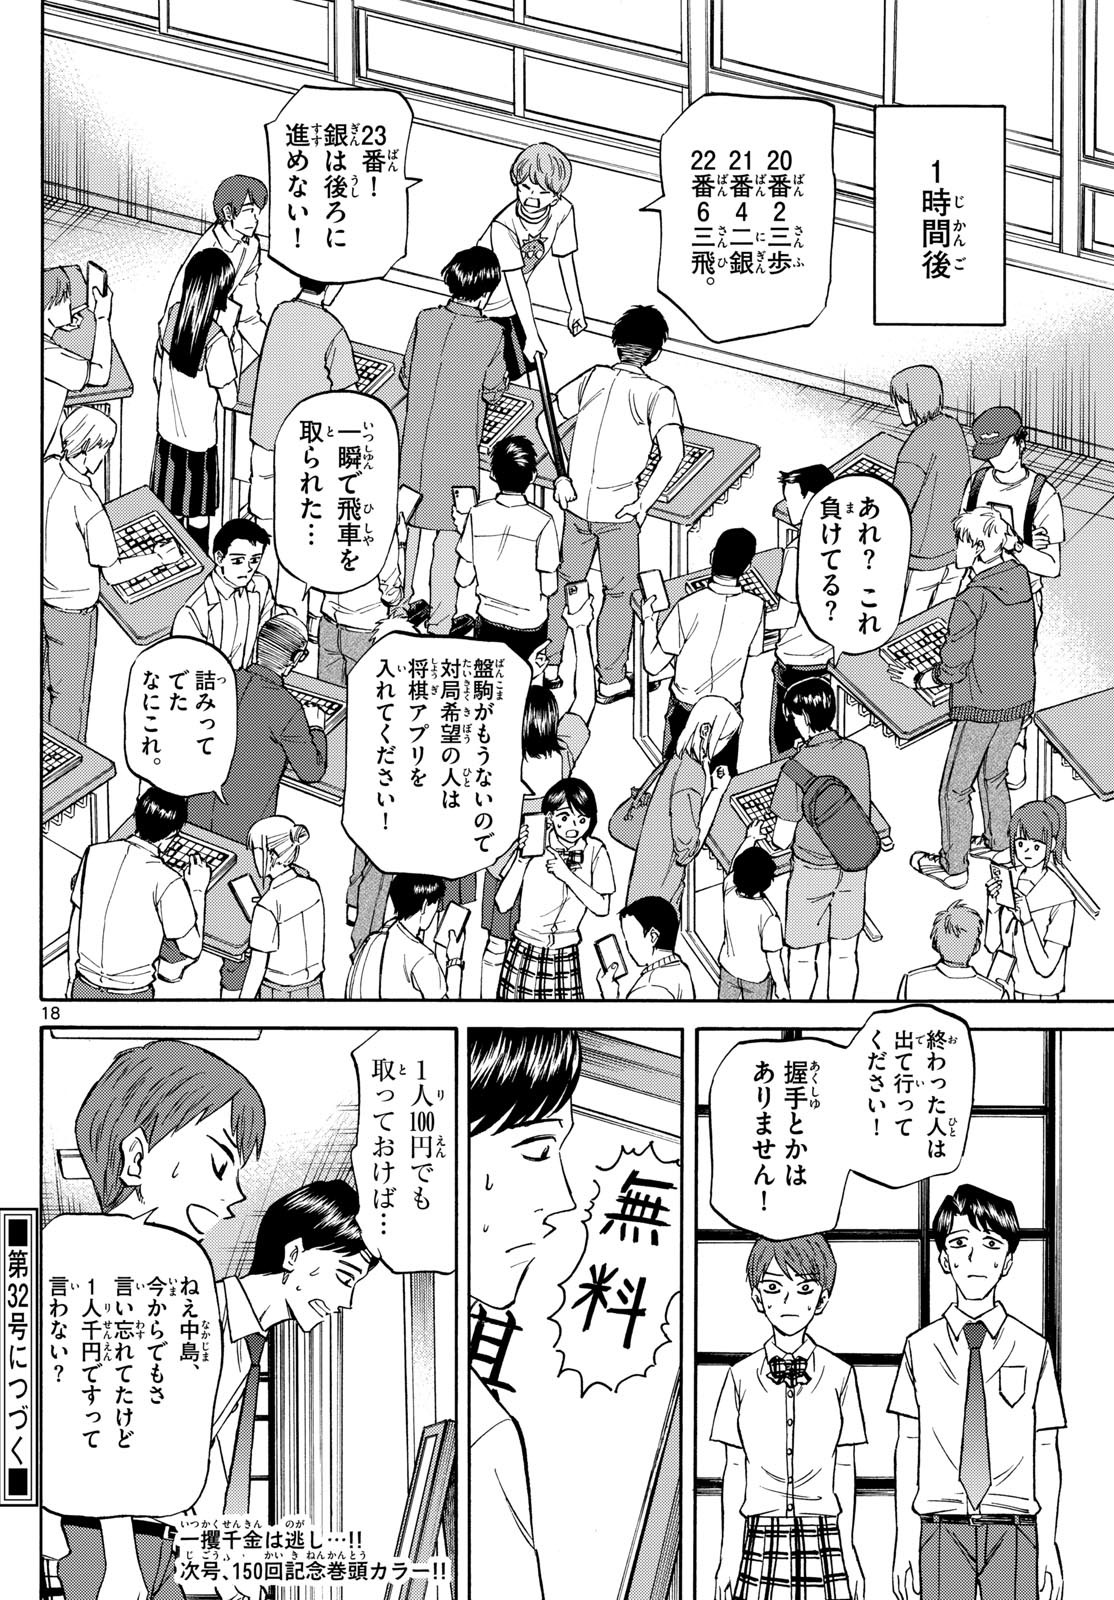 Ryu-to-Ichigo - Chapter 149 - Page 18